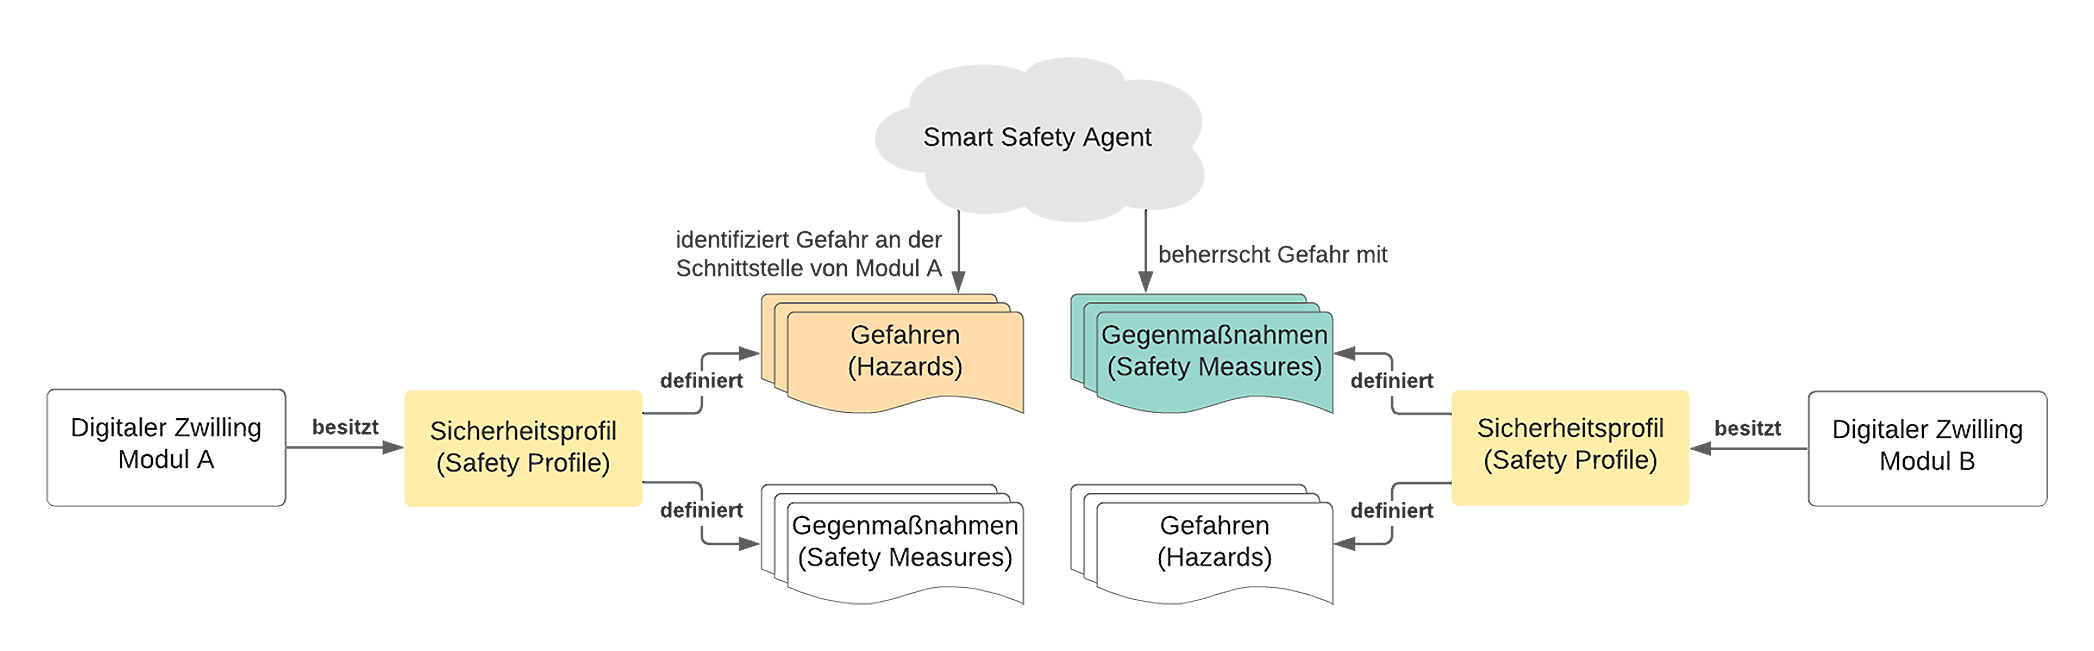 Der Smart-Safety-Agent muss je nach Umgebung verschiedene Schutzmaßnahmen unterscheiden und anwenden können. (Bild: TÜV Süd AG)